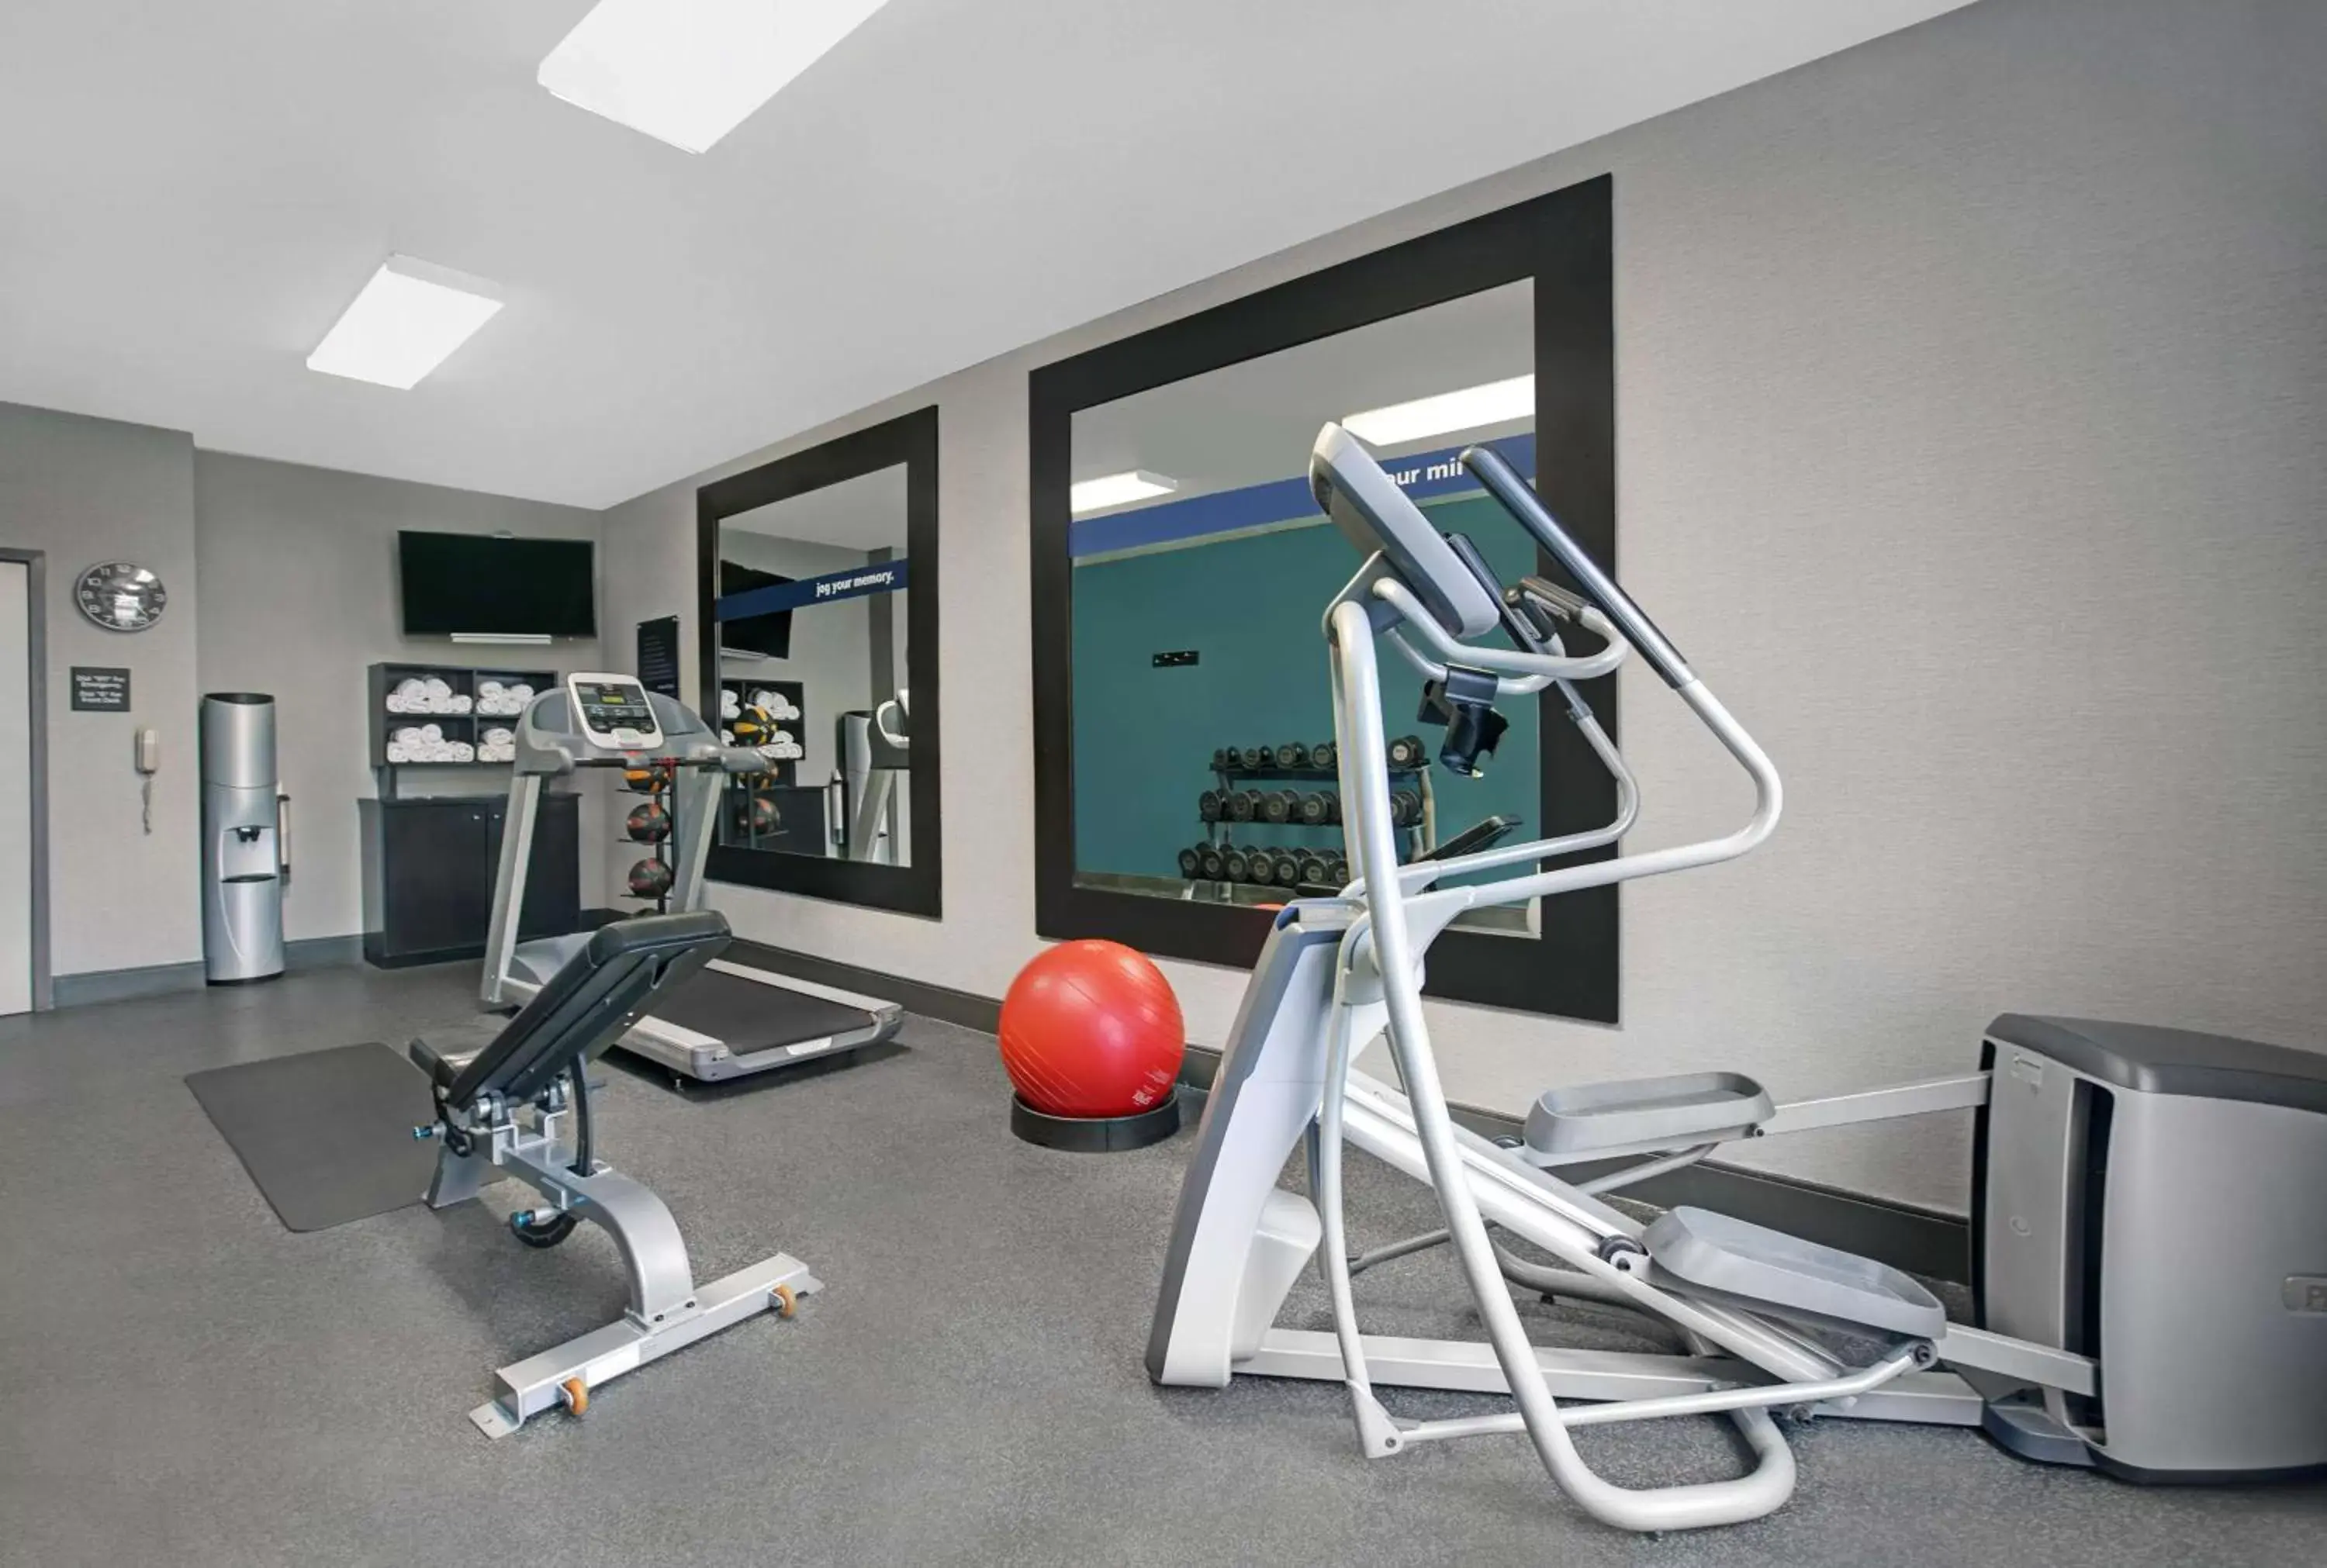 Fitness centre/facilities, Fitness Center/Facilities in Hampton Inn Keokuk